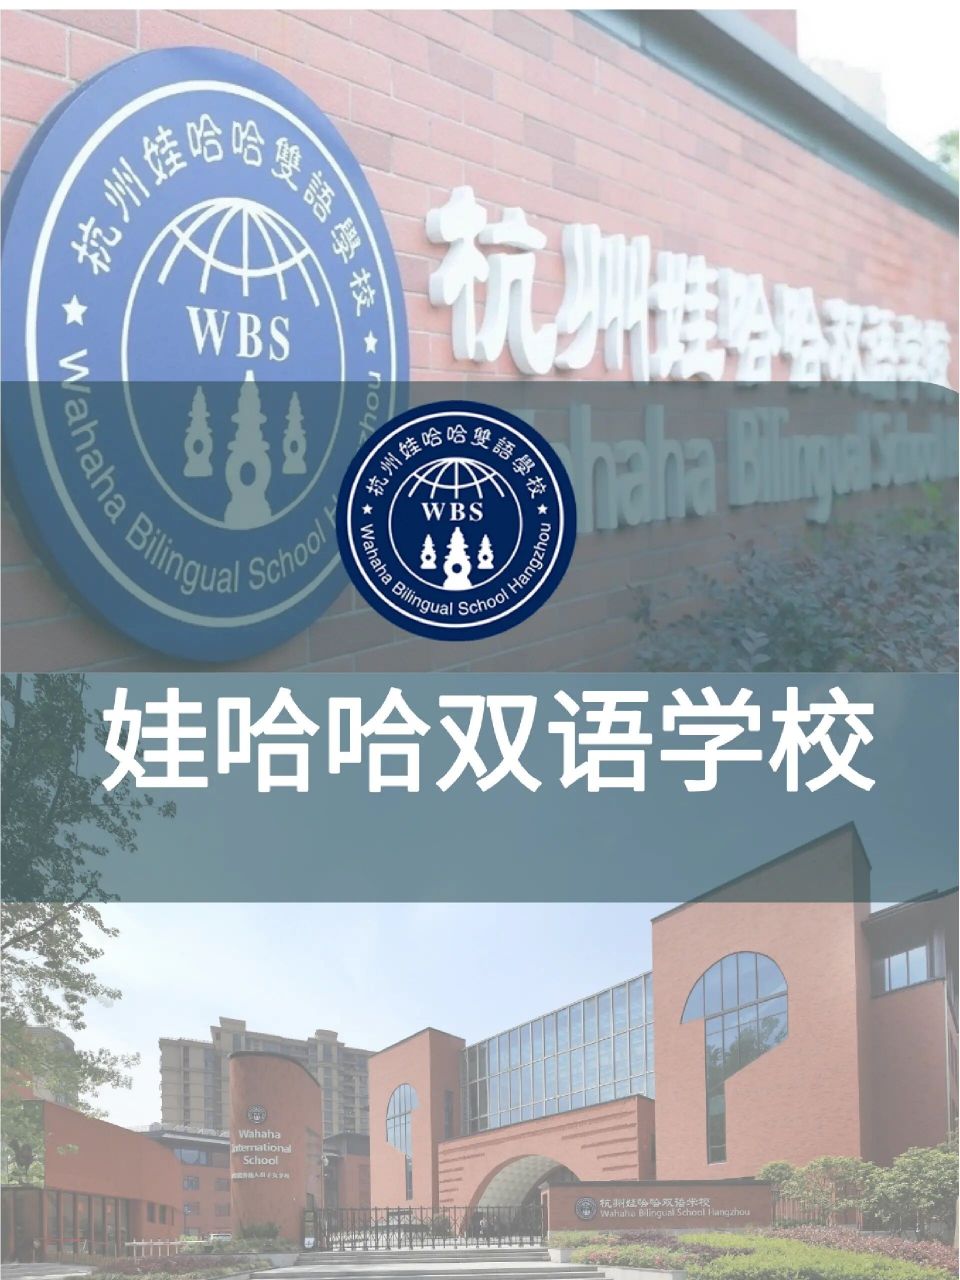 娃哈哈双语学校高中部 2020年5月,杭州娃哈哈双语学校正式成为一所